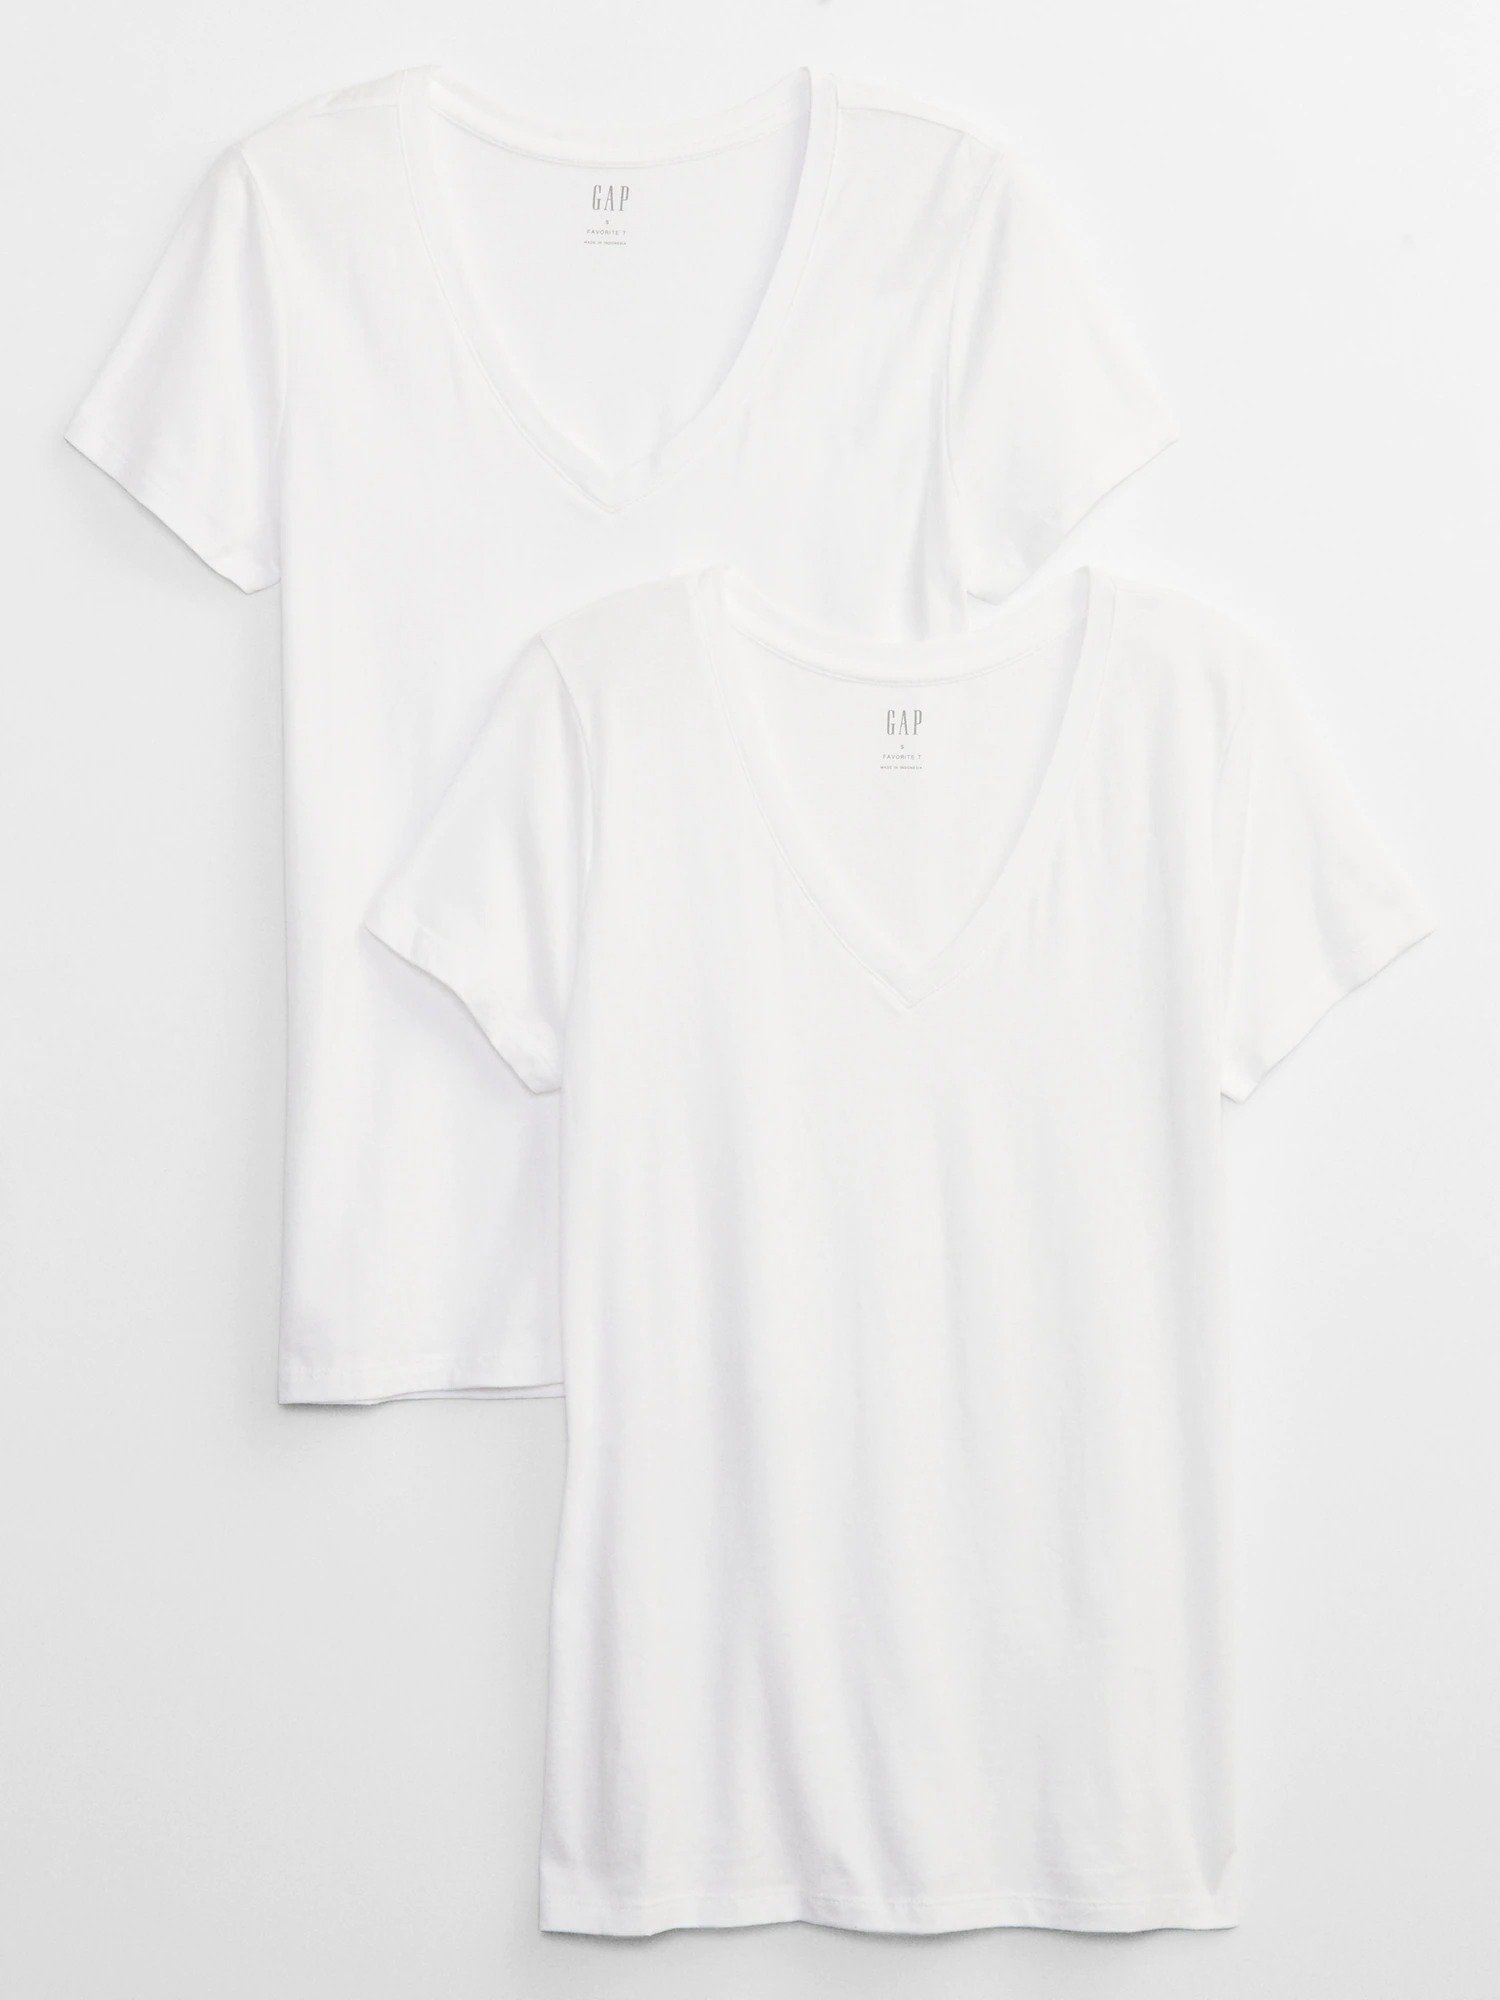 Favorite V Yaka 2'li T-Shirt product image